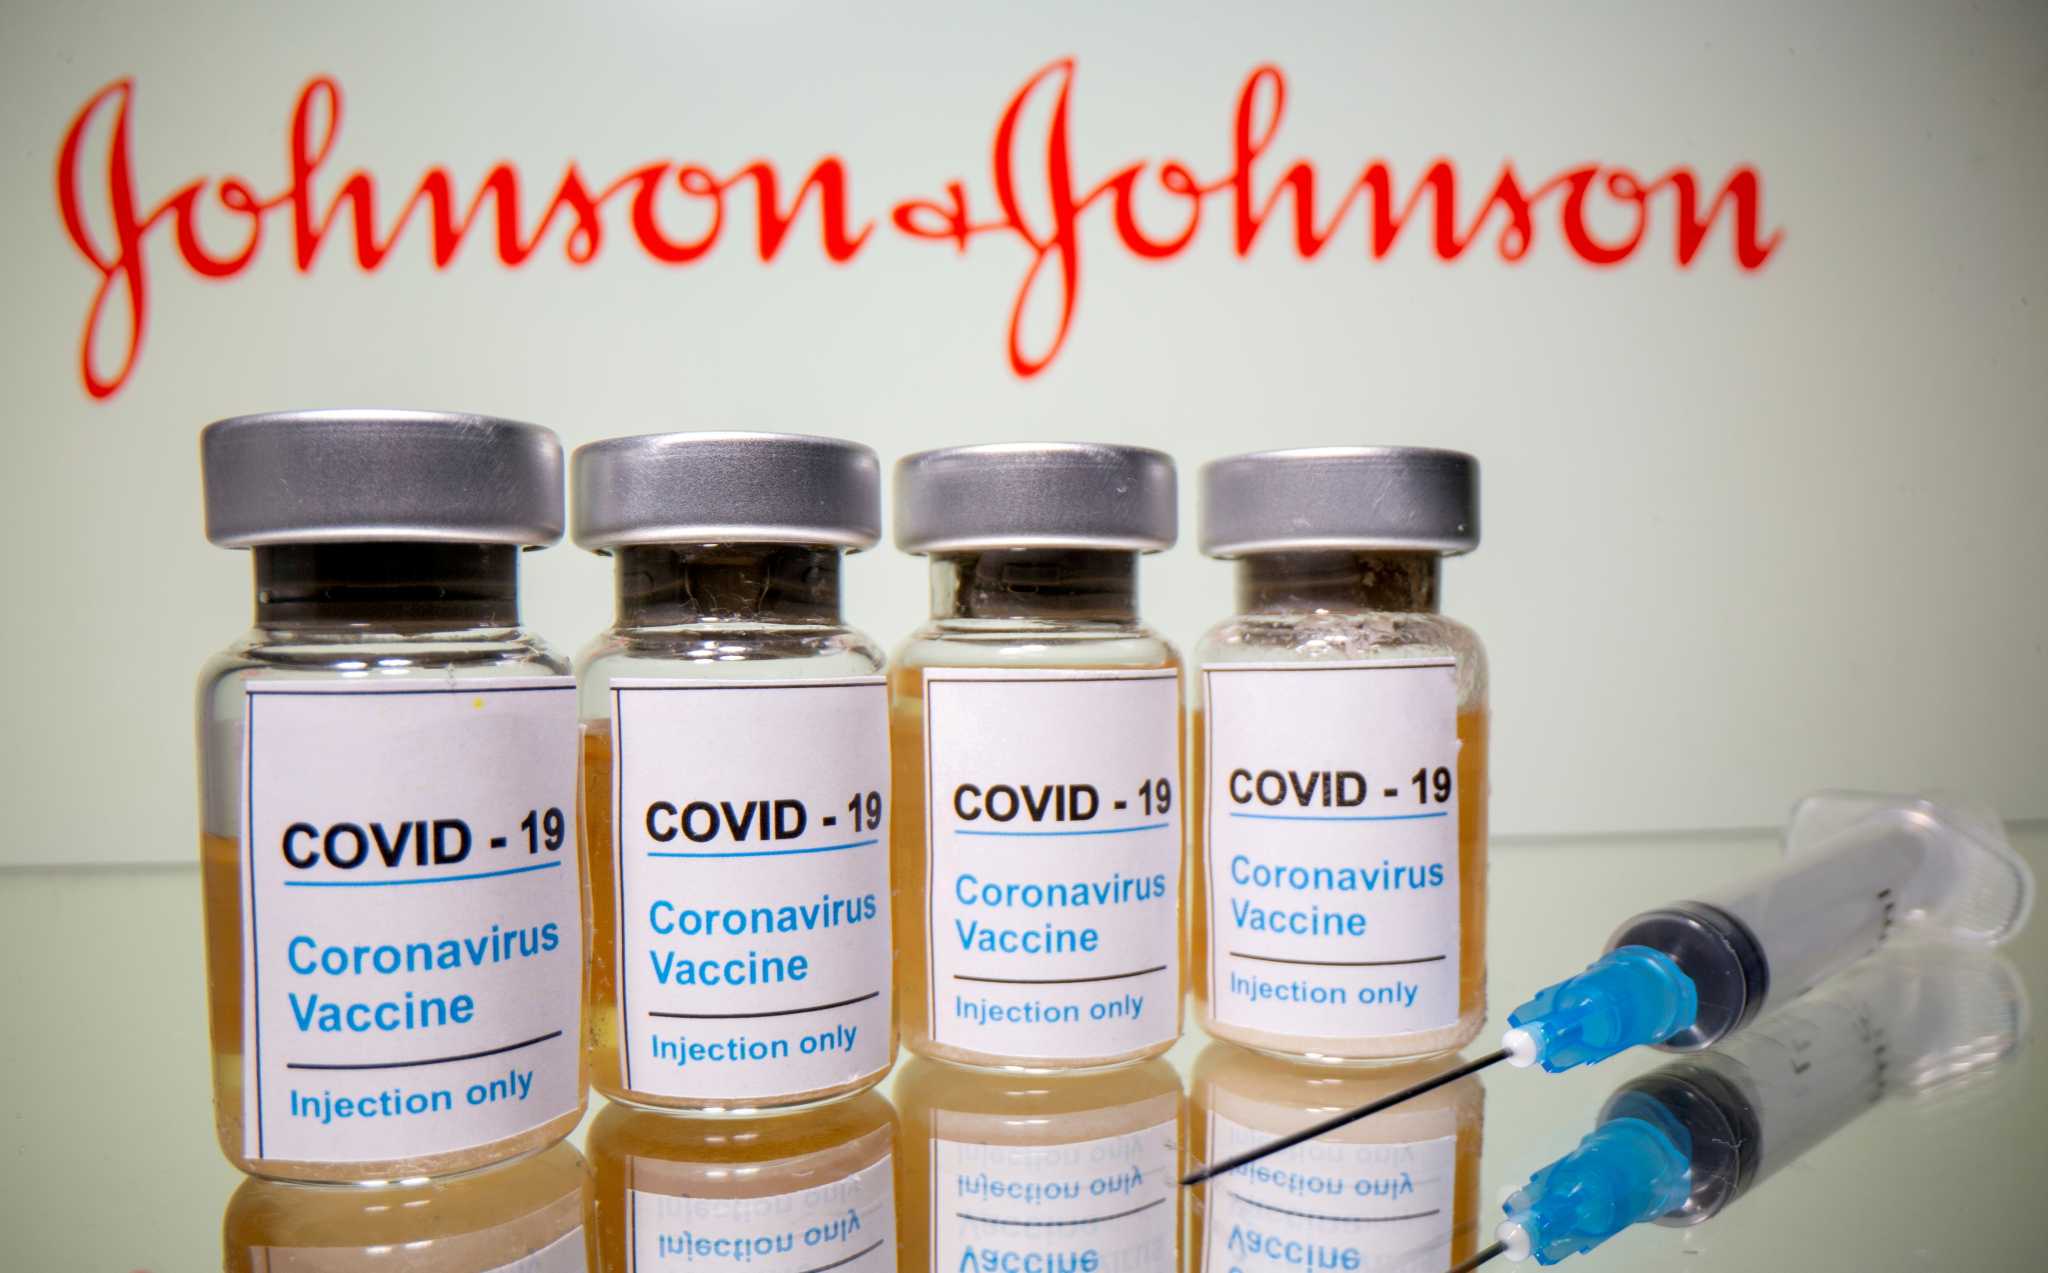 Εμβόλιο Johnson & Johnson